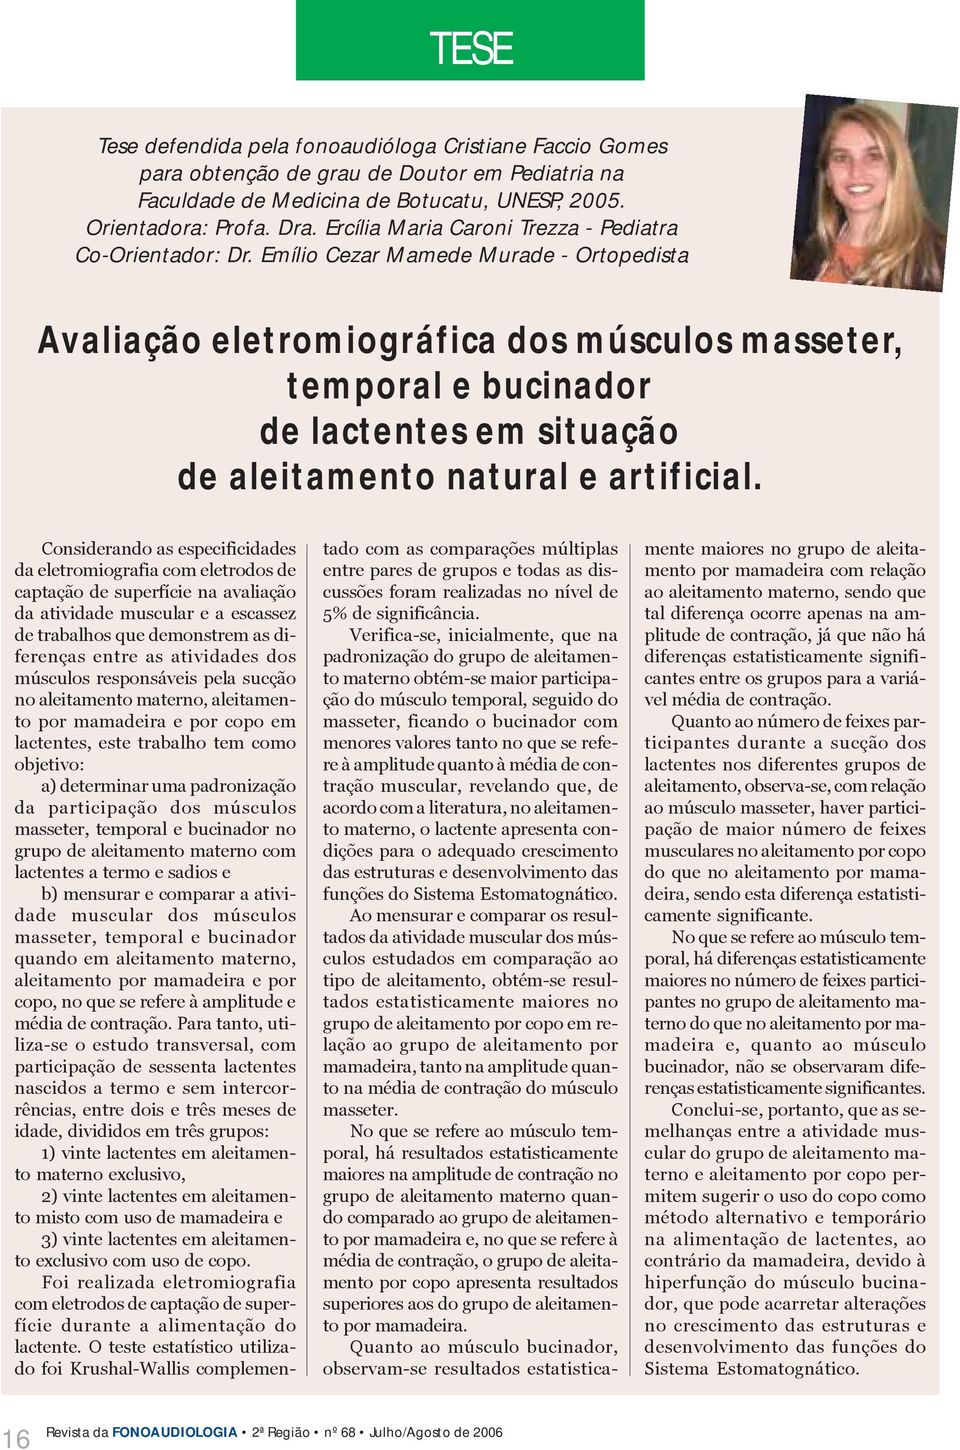 Emílio Cezar Mamede Murade - Ortopedista Avaliação eletromiográfica dos músculos masseter, temporal e bucinador de lactentes em situação de aleitamento natural e artificial.